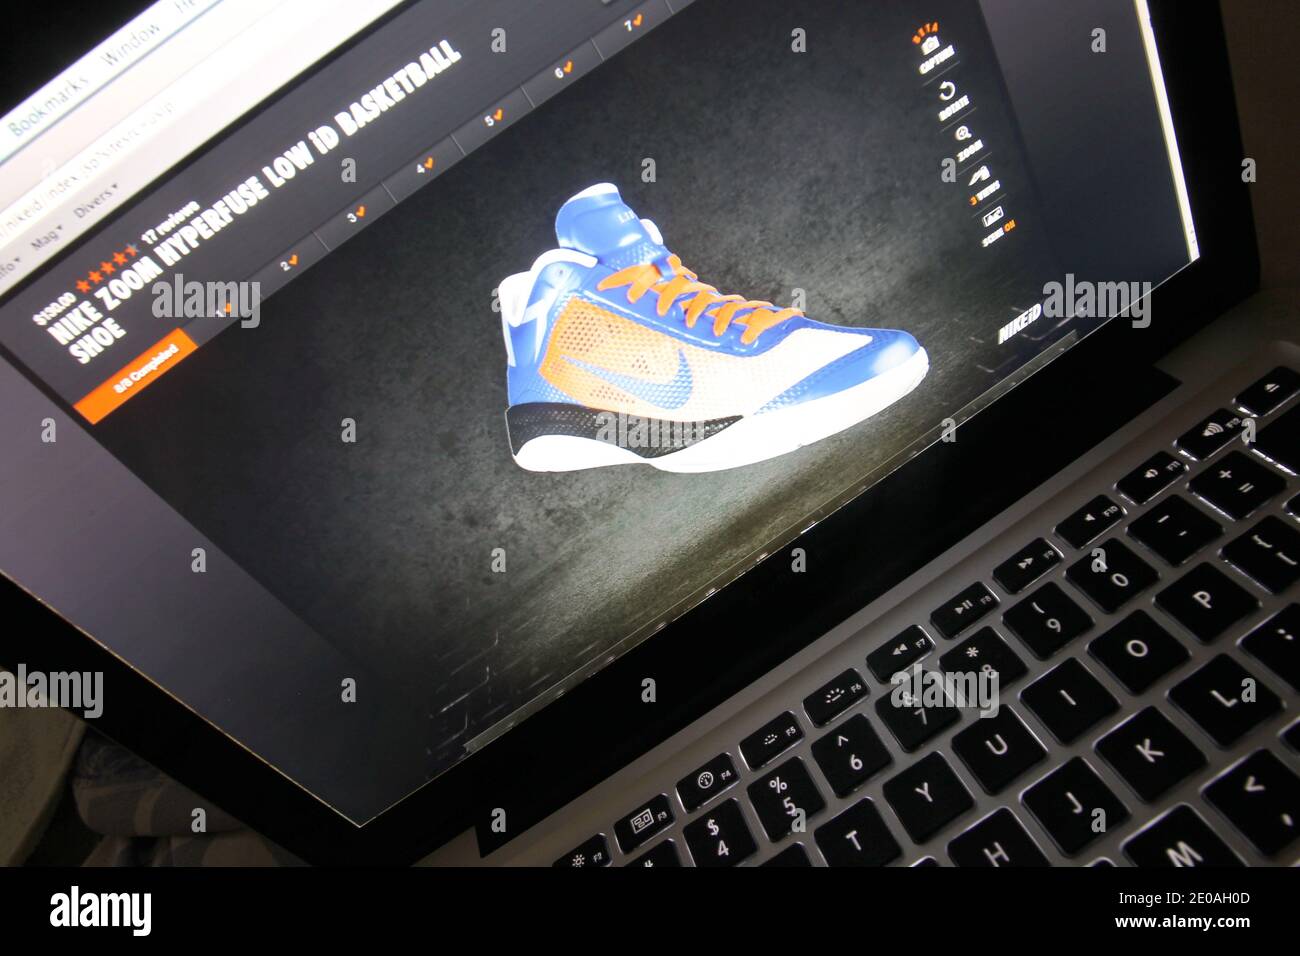 inc. Empieza a vender en su web las zapatillas de baloncesto Nike Zoom Low, diseñadas especialmente para los neoyorquinos Jeremy Lin durante fin de semana en el que